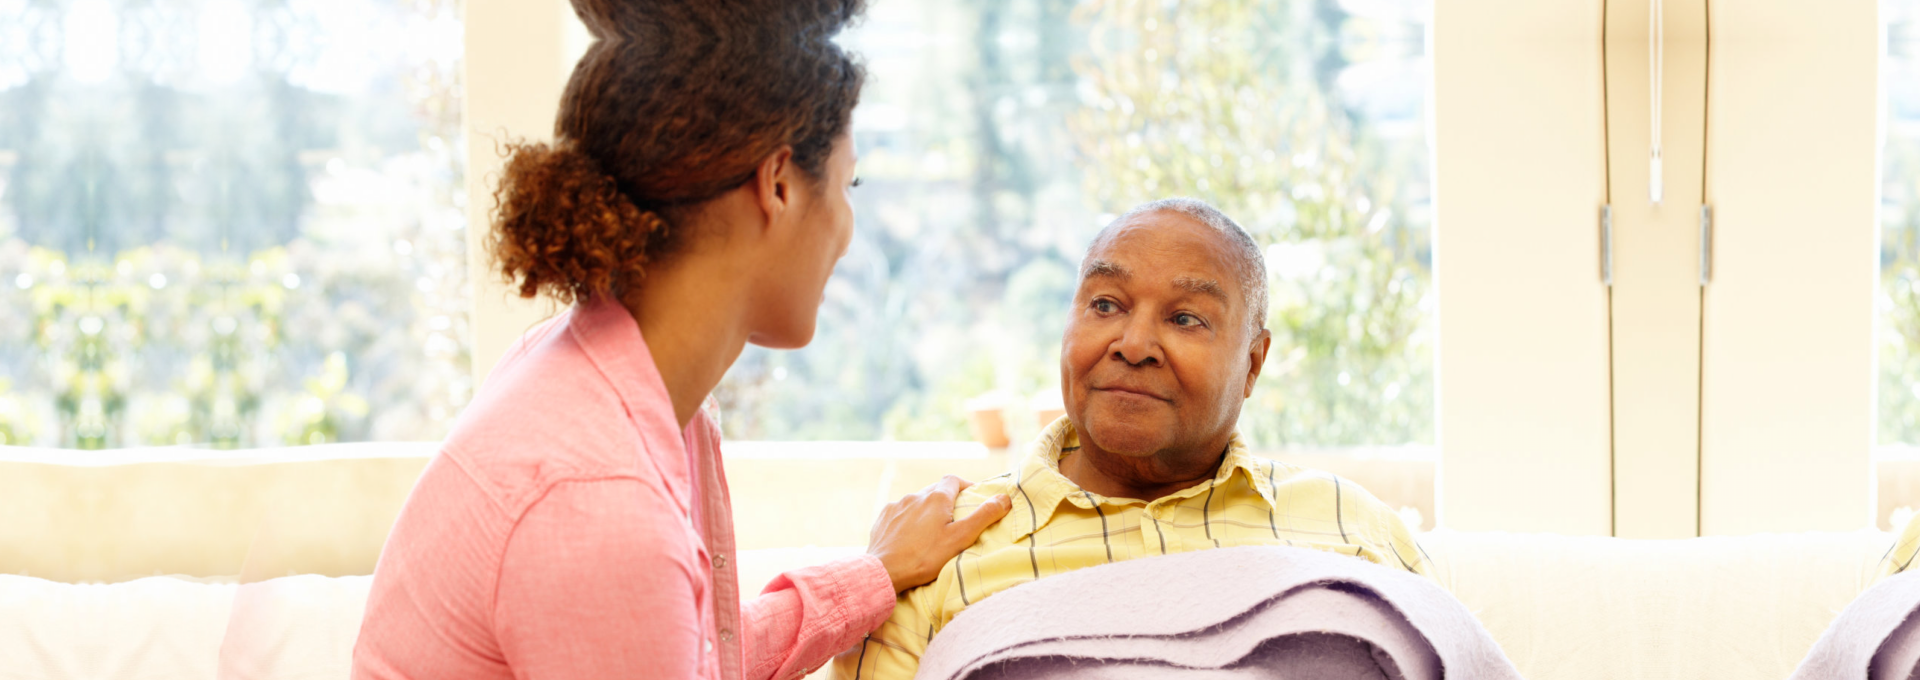 Caregiver taking care of elder